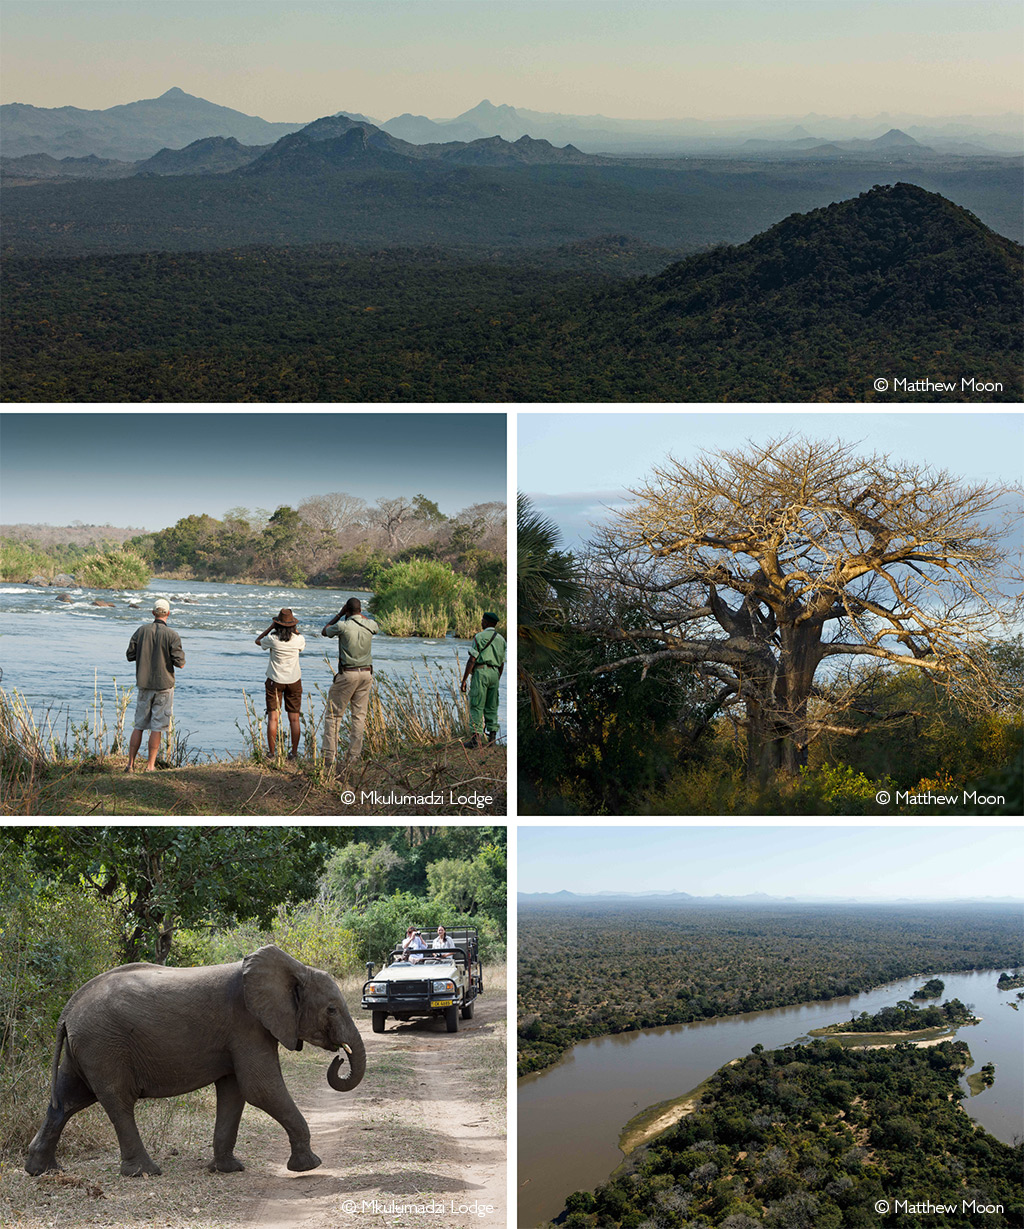 Majete Wildlife Reserve